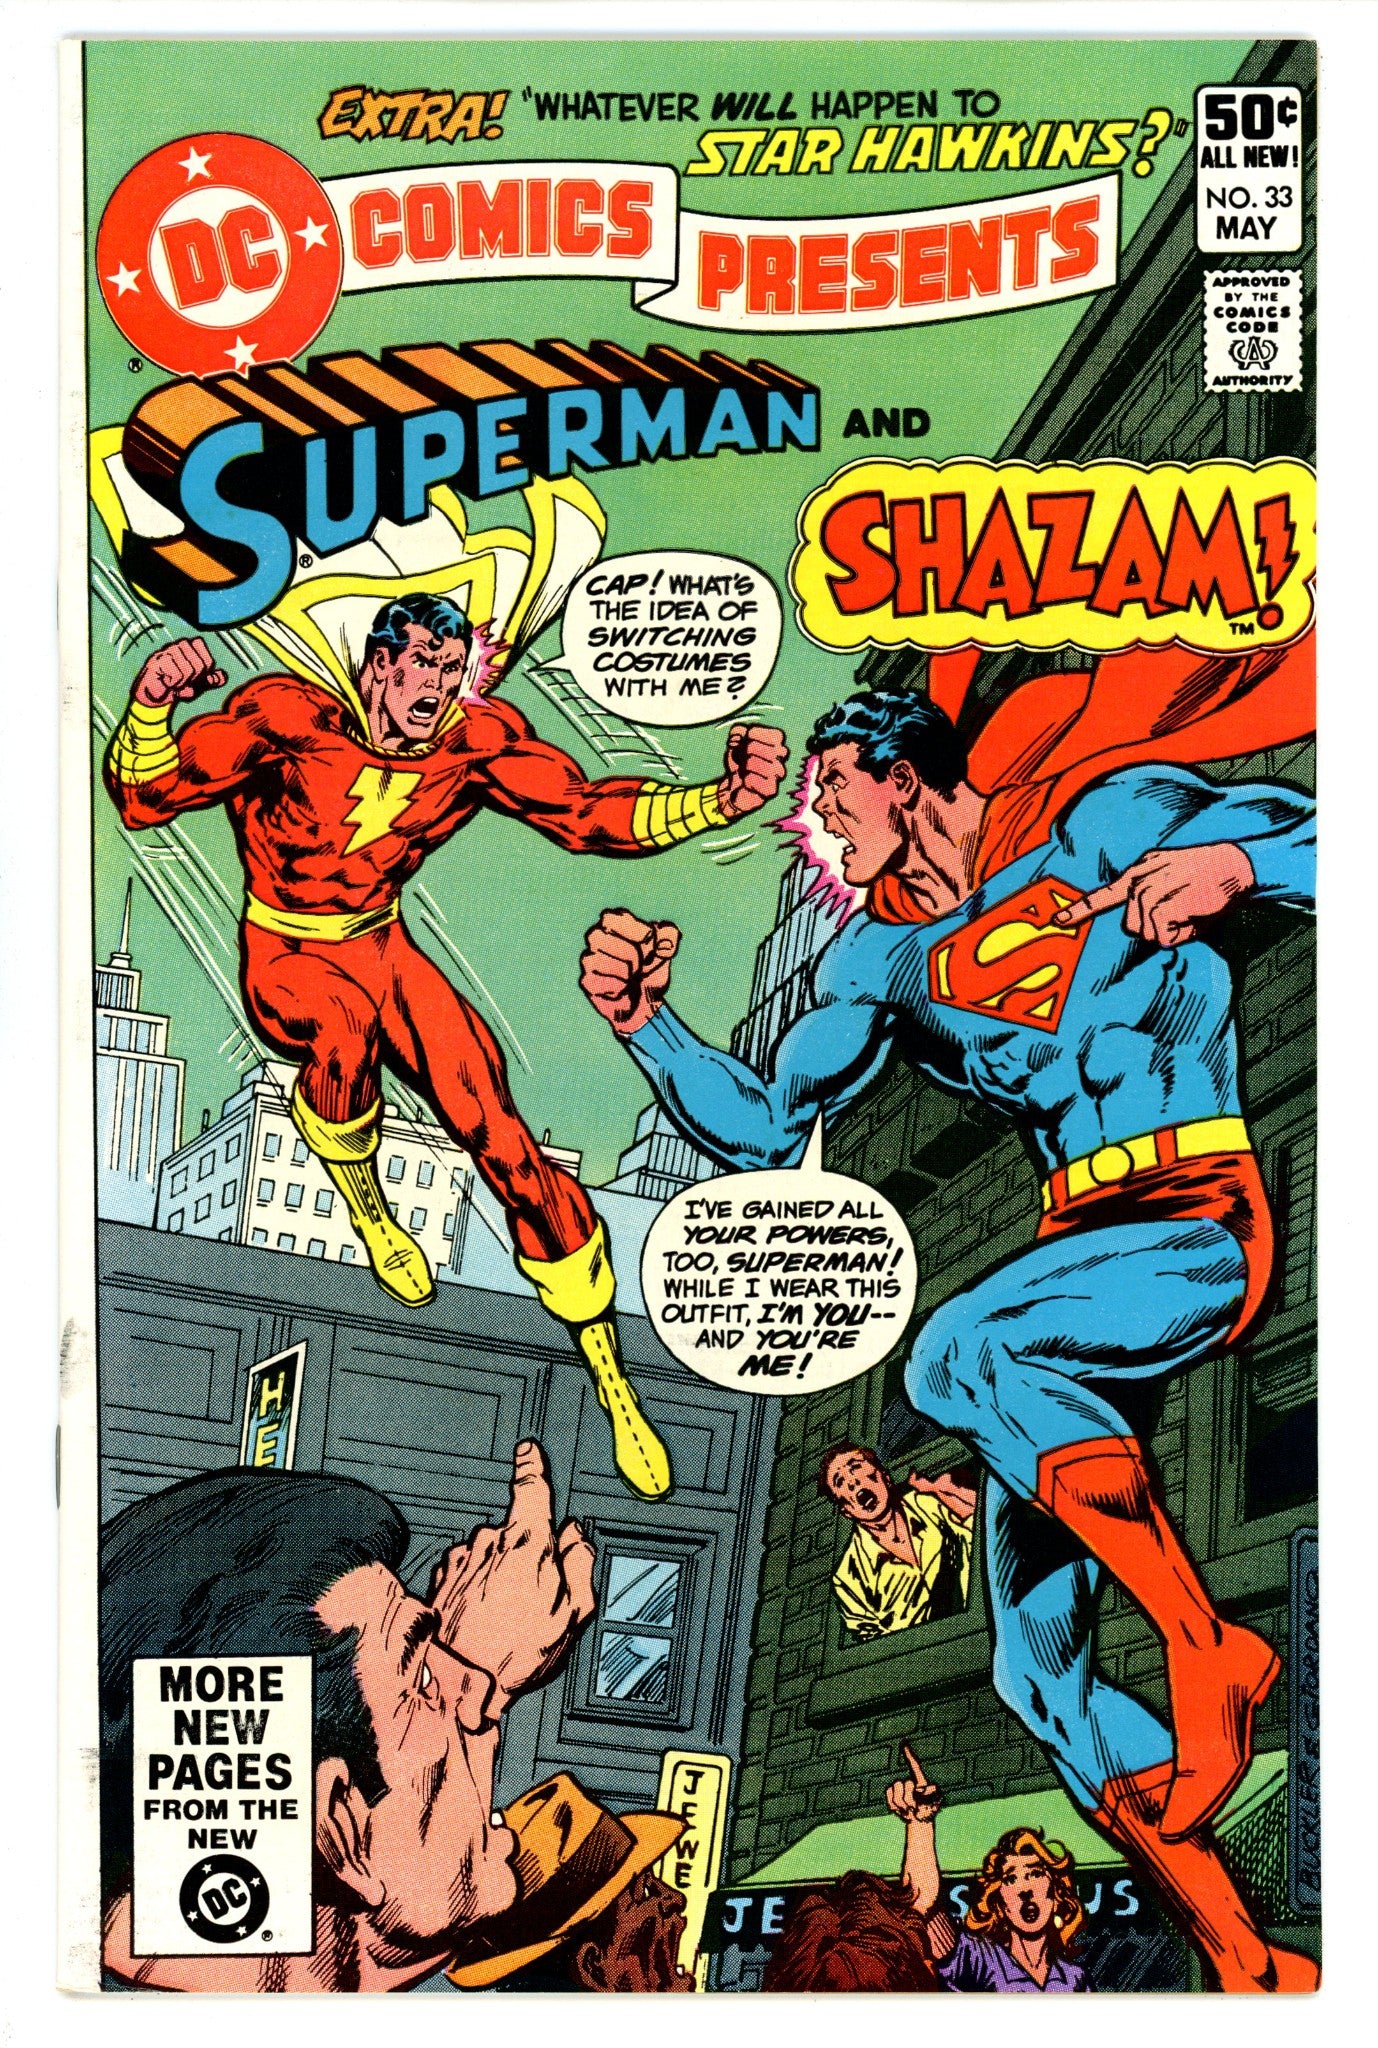 DC Comics Presents Vol 1 33 VF/NM (9.0) (1981) 